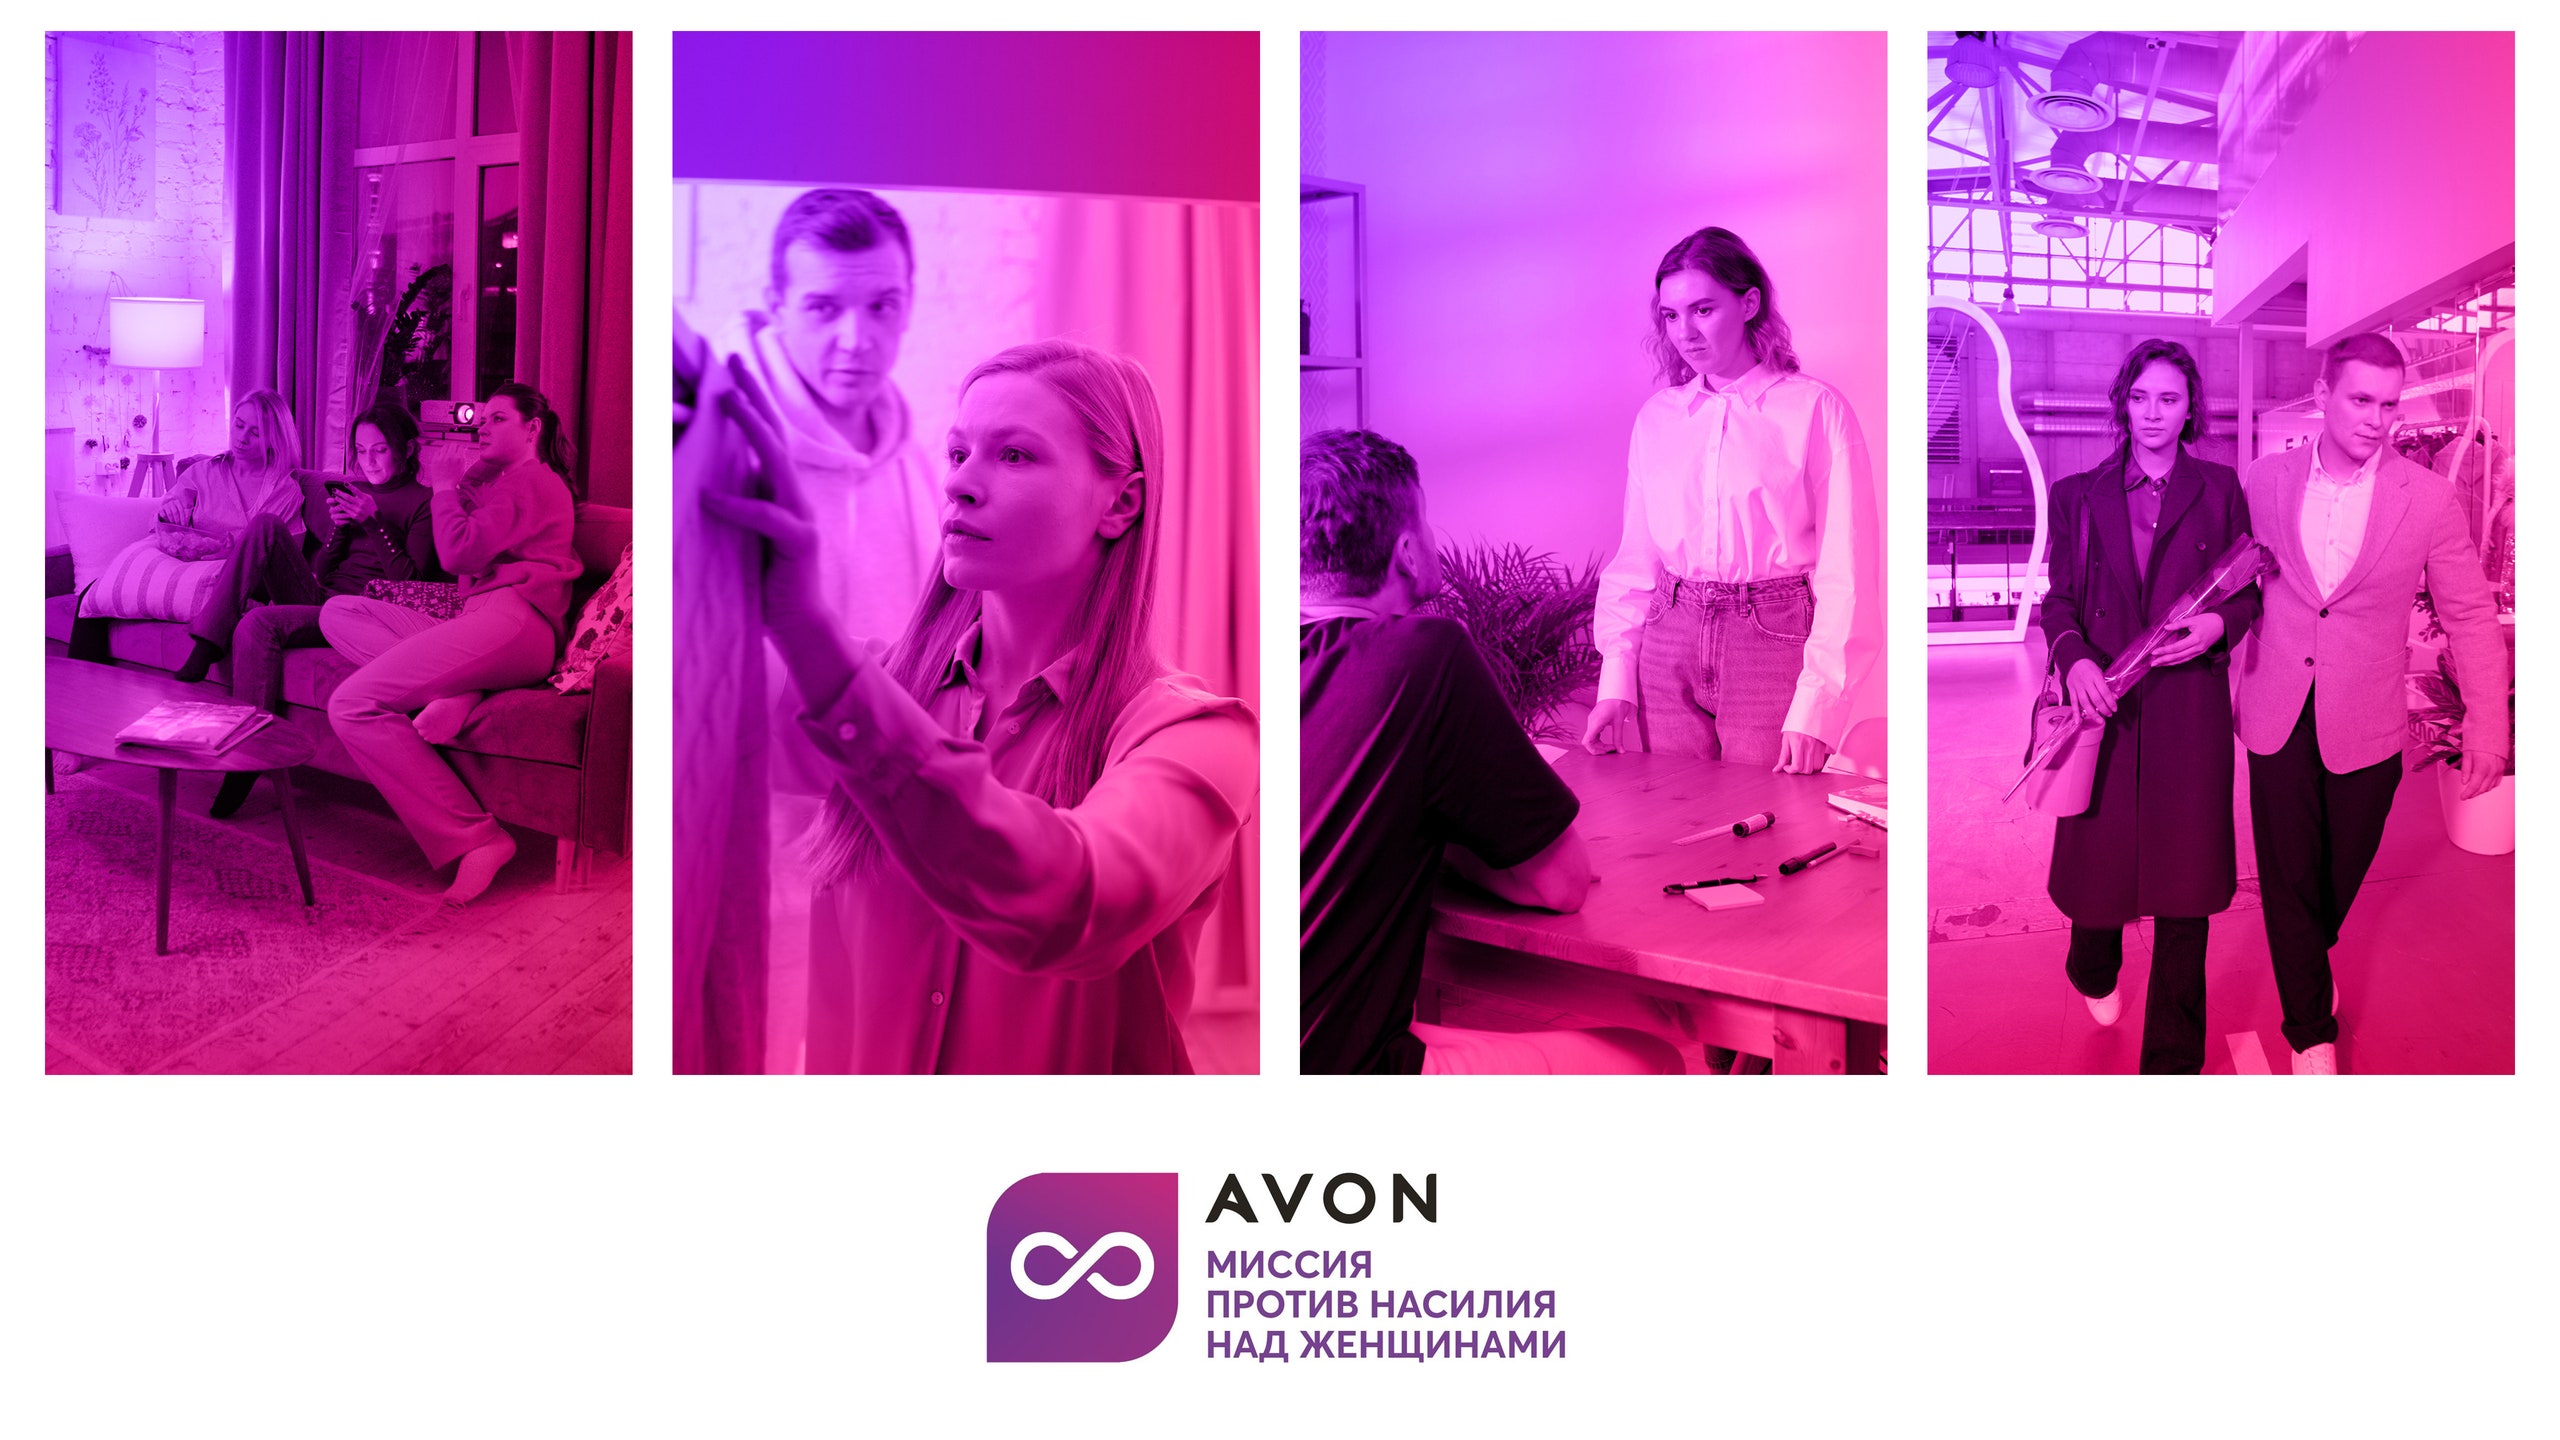 Avon запустил кампанию по поддержке женщин от гендерного насилия